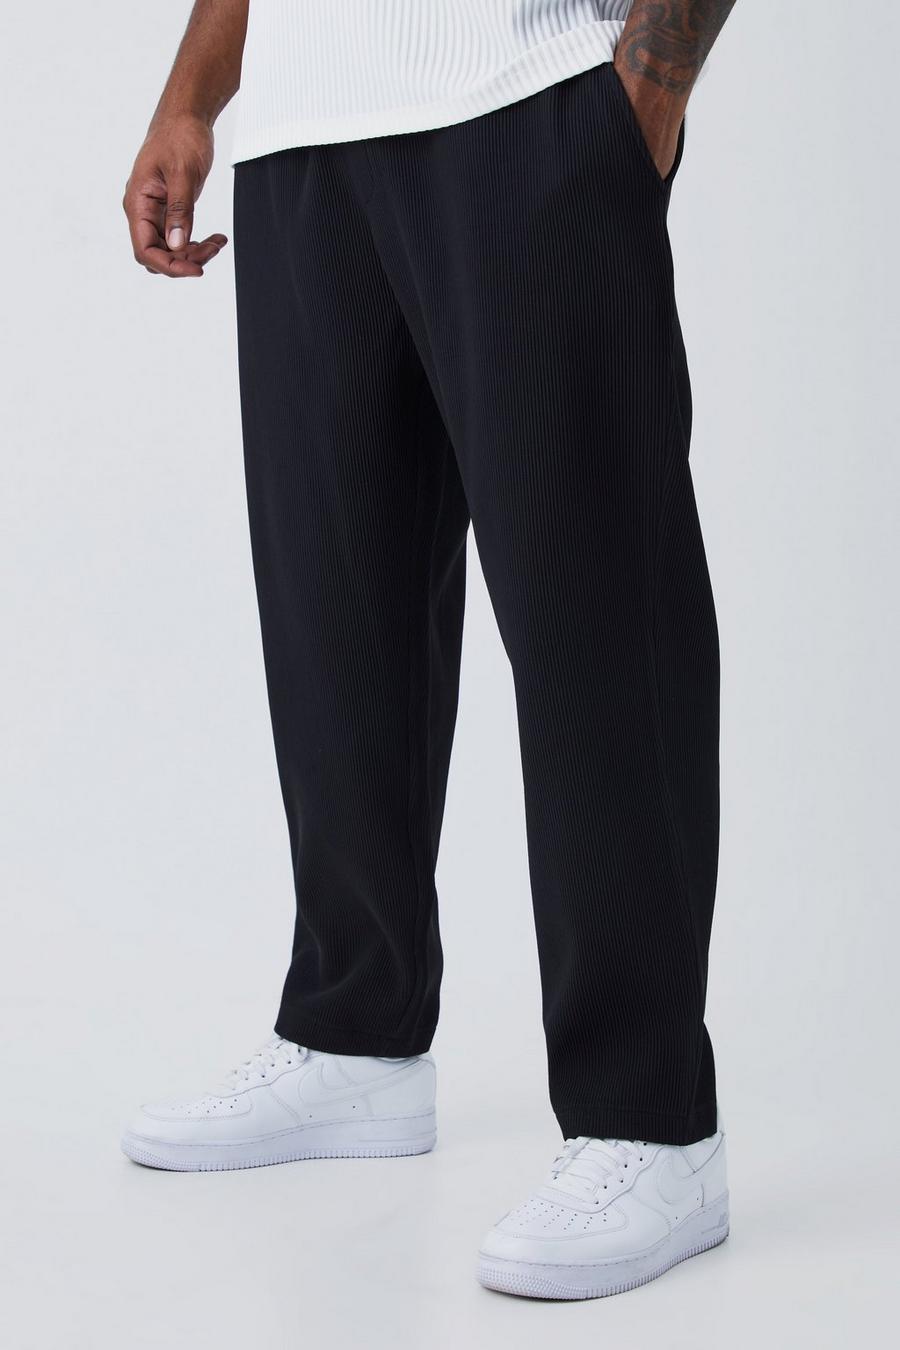 Pantaloni affusolati Plus Size con pieghe e vita elasticizzata, Black